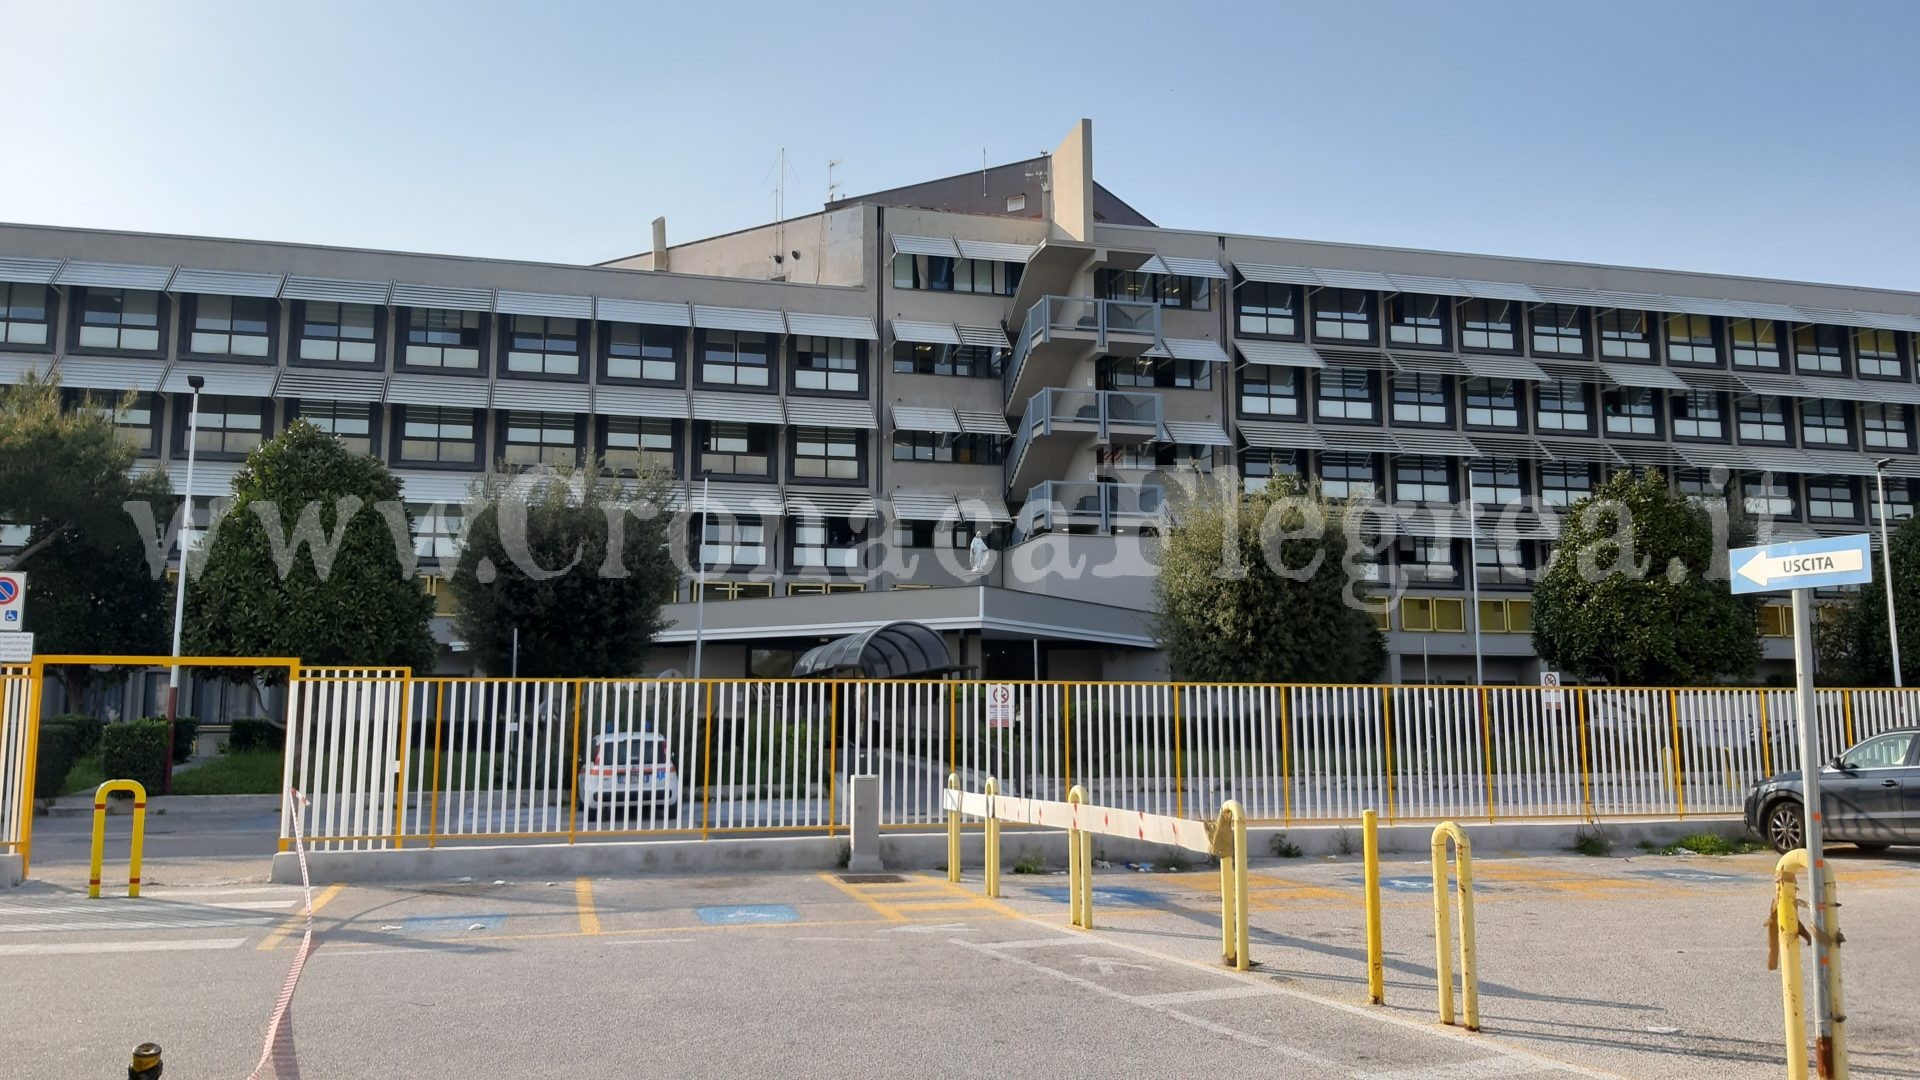 Scassinato distributore automatico nell’ospedale di Pozzuoli: ladro incastrato dalle telecamere